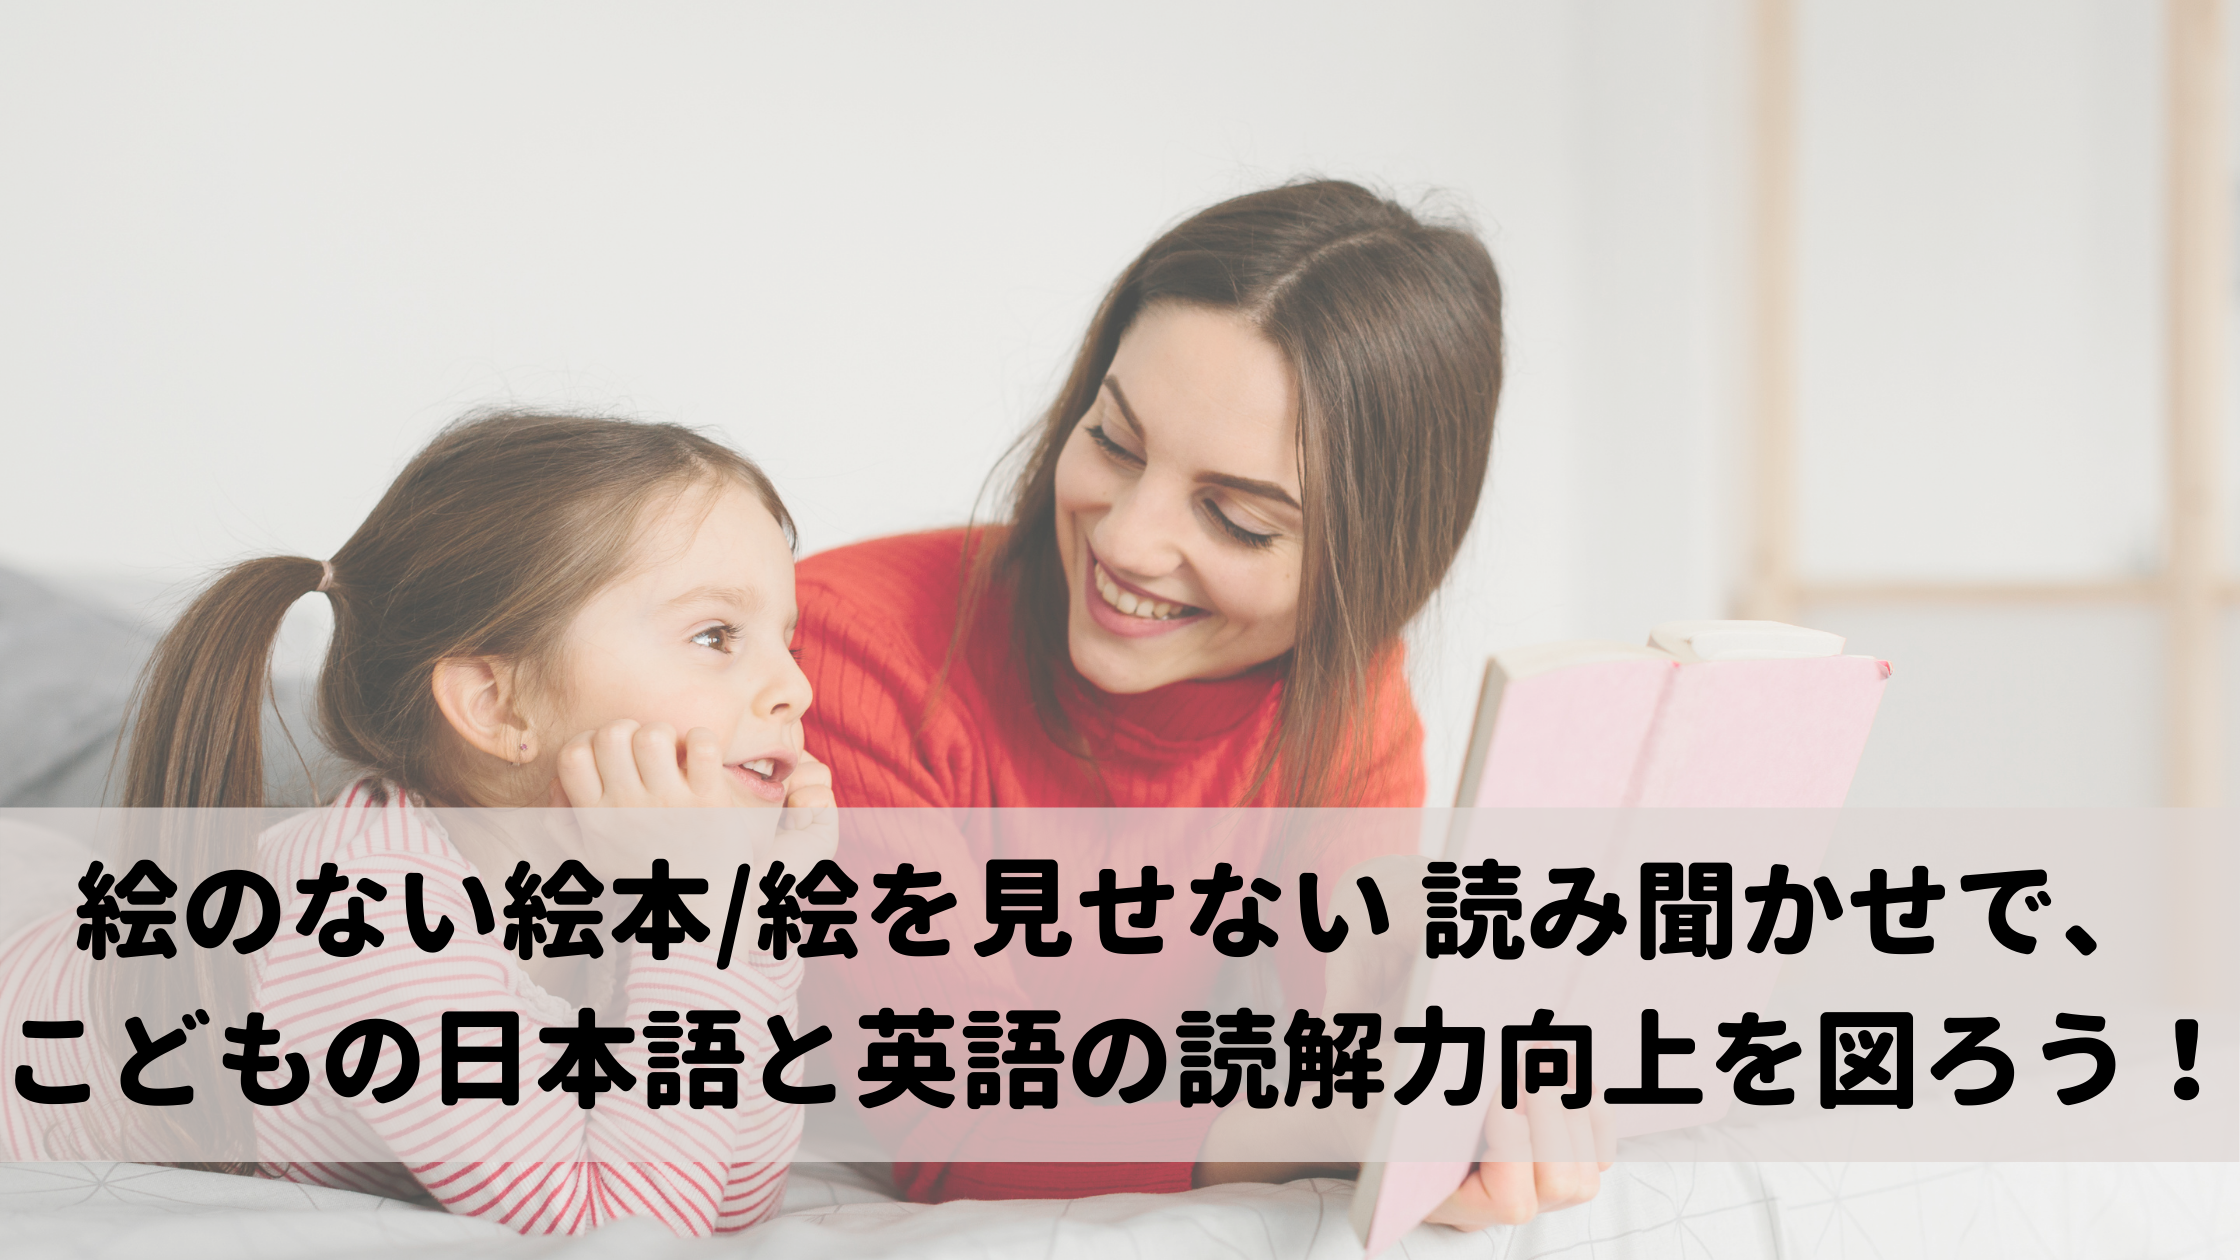 絵のない本/絵を見せない 読み聞かせで、こどもの日本語と英語の読解力向上を図ろう！